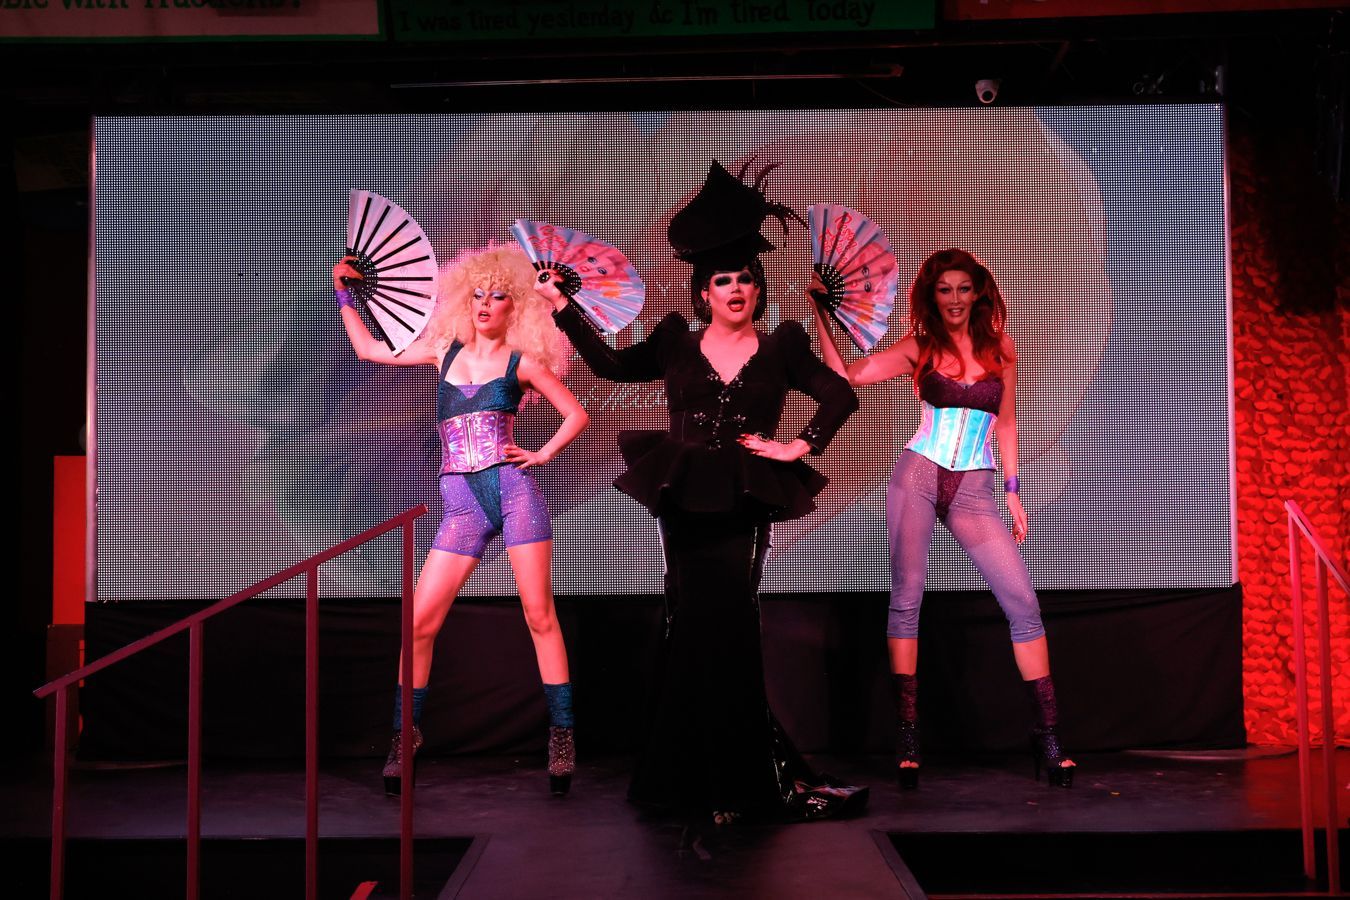 Gemeinsam mit Dragqueen Shannel performen Selma und Nicole als Foxy und Roxy zu RuPauls "Supermodel".